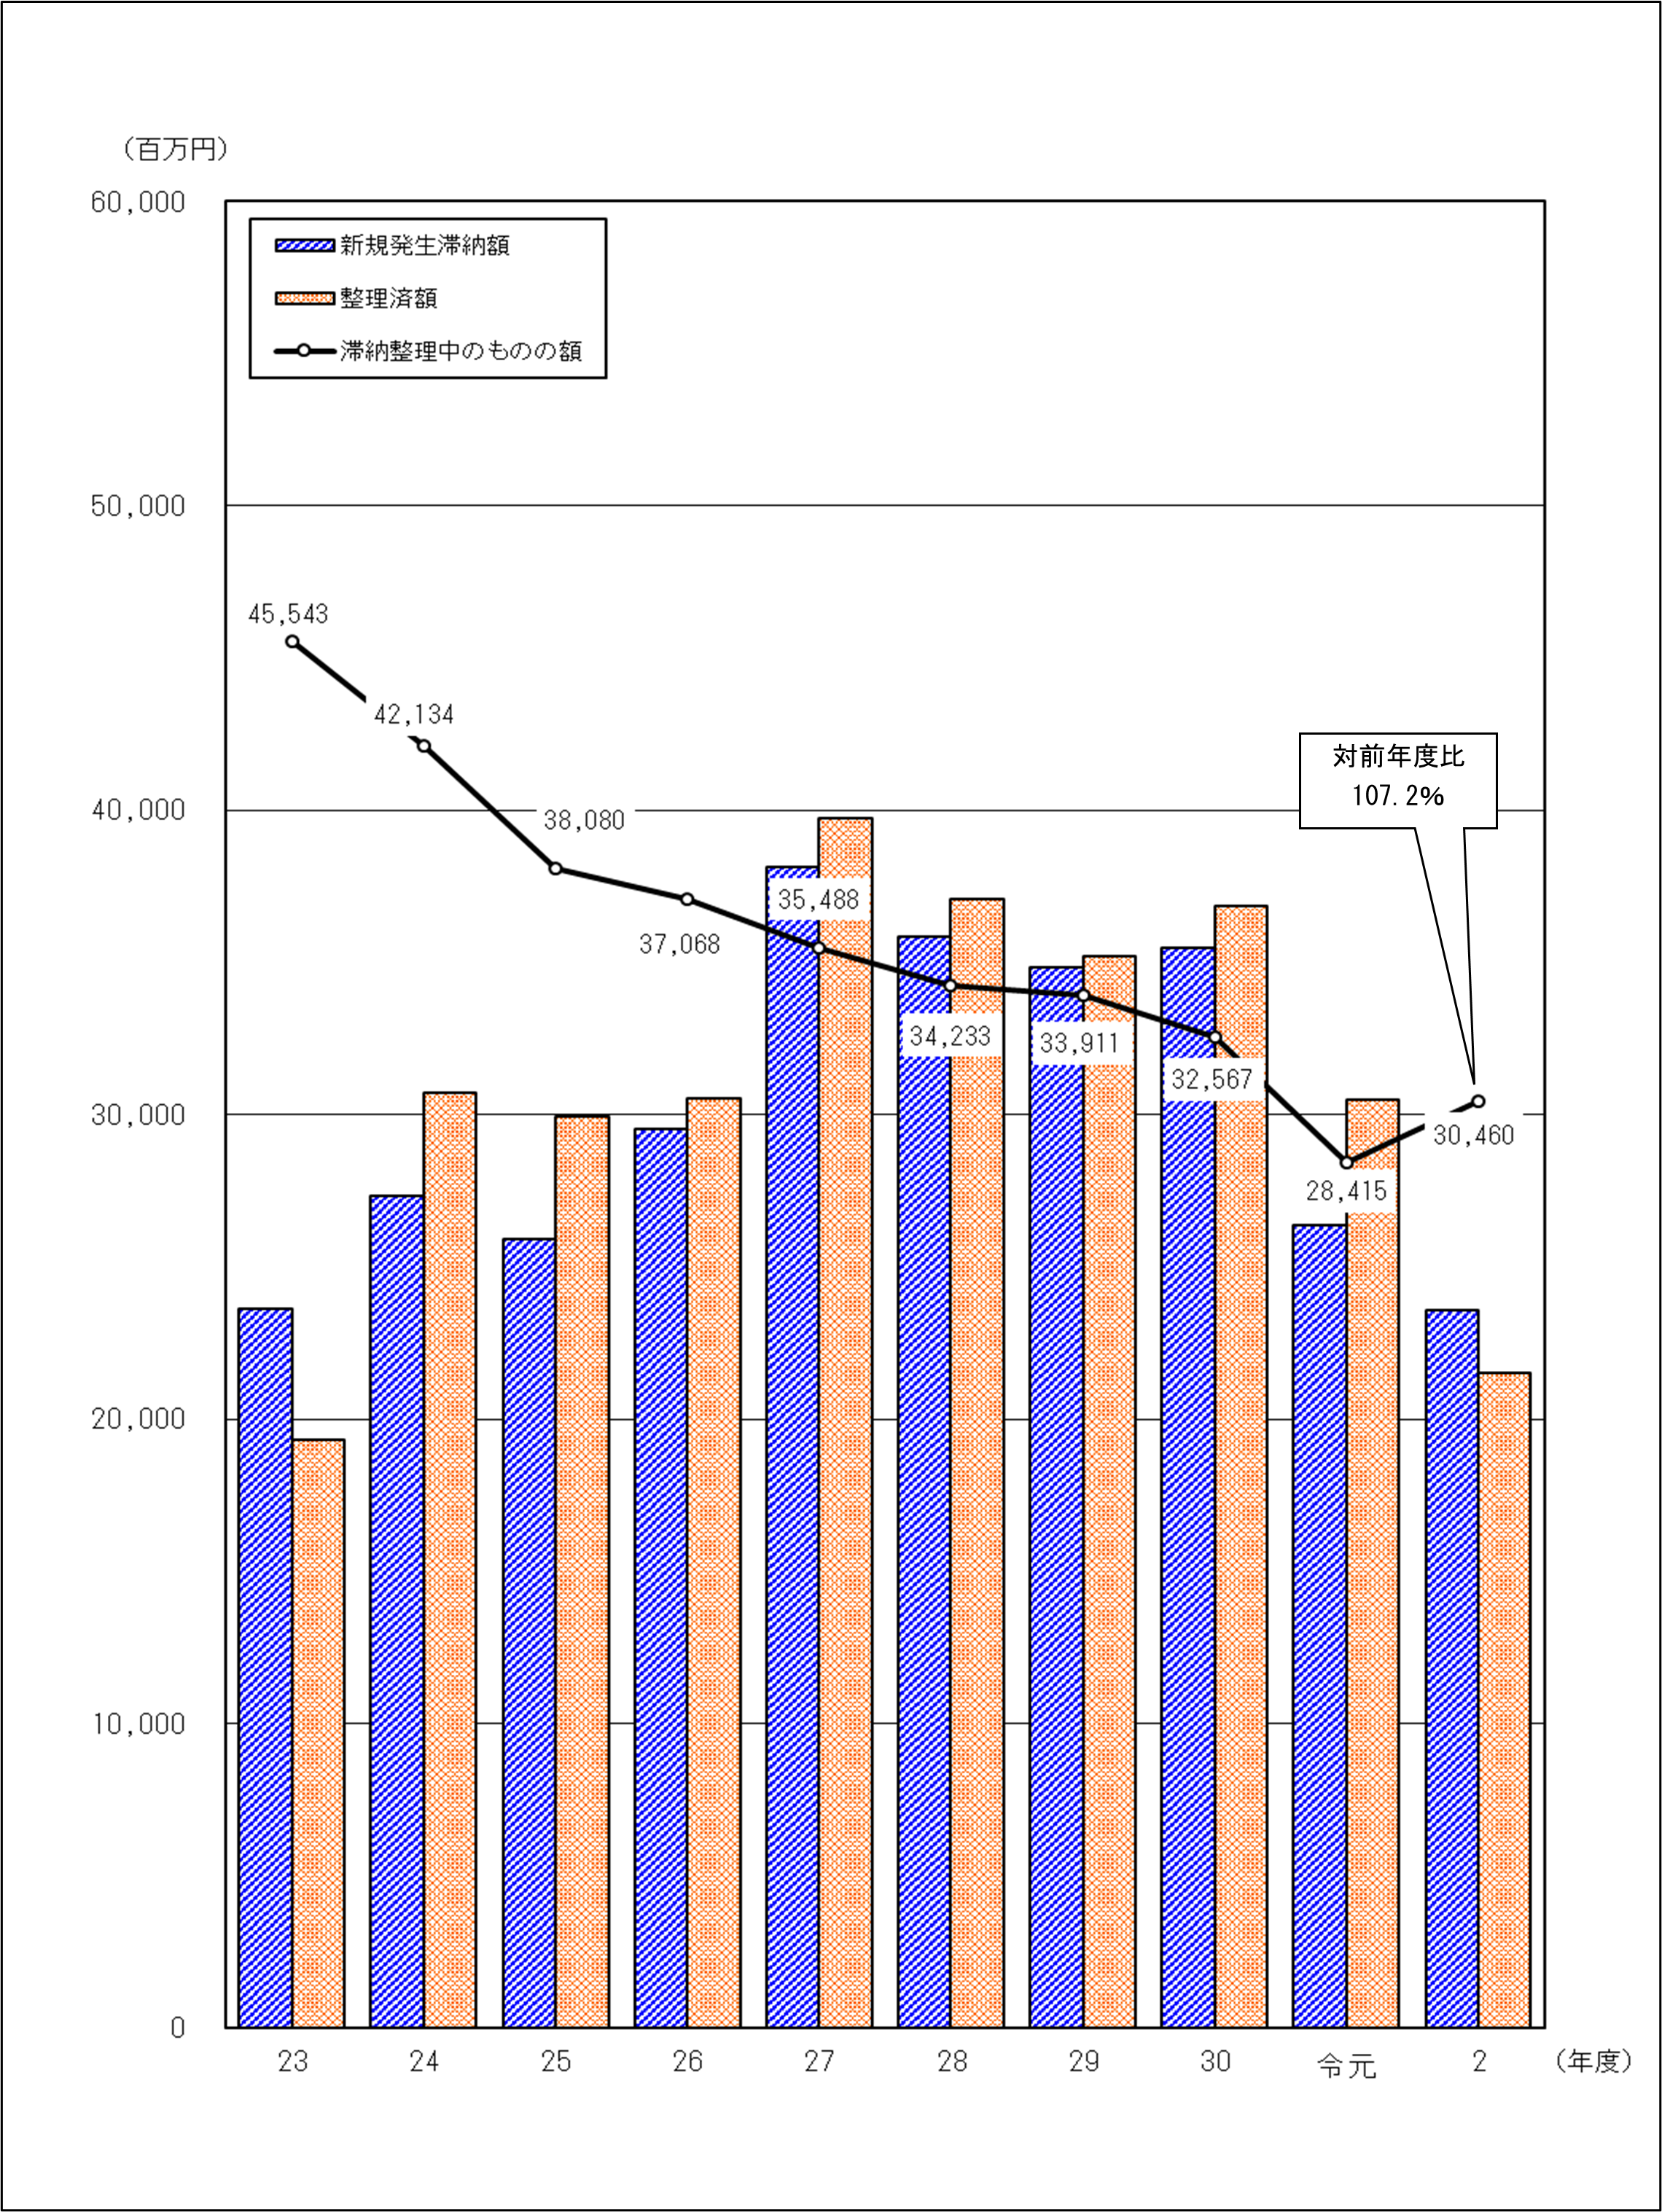 平成23年度から令和2年度の滞納整理済額の推移のグラフ